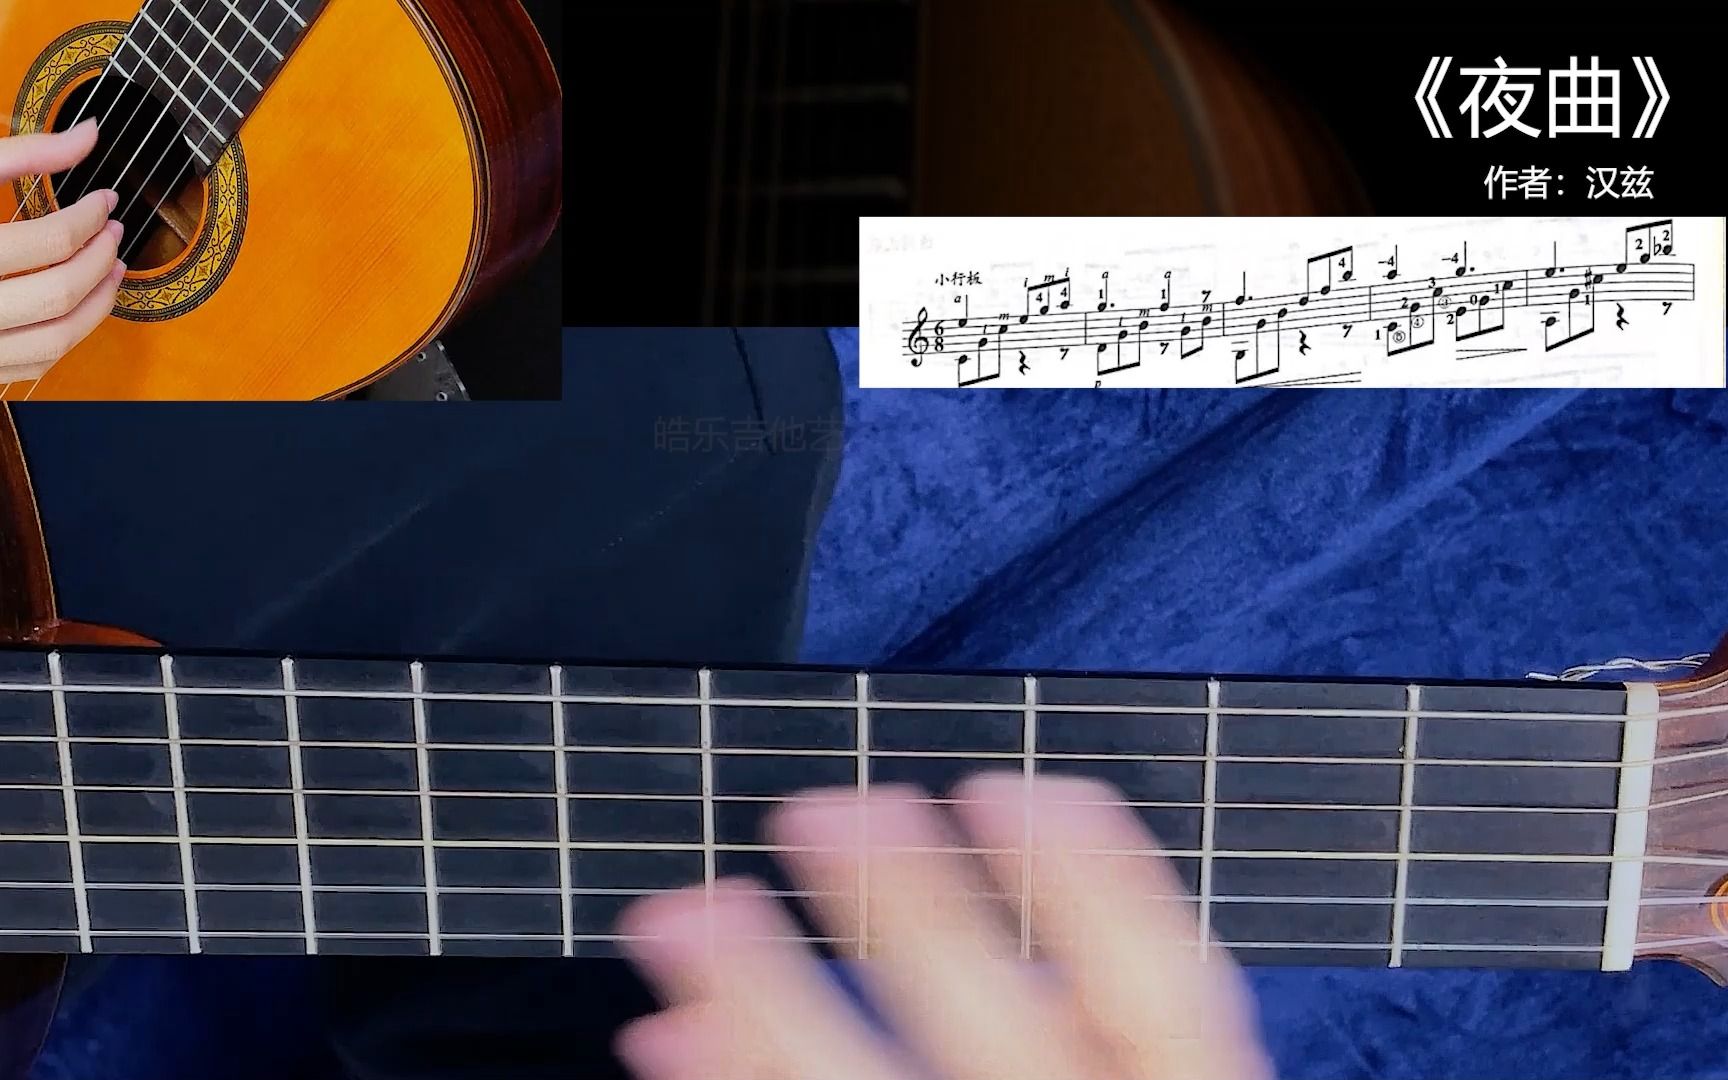 《夜曲》 汉茨 渐进学习曲目第29集 带你一首一首学习古典吉他